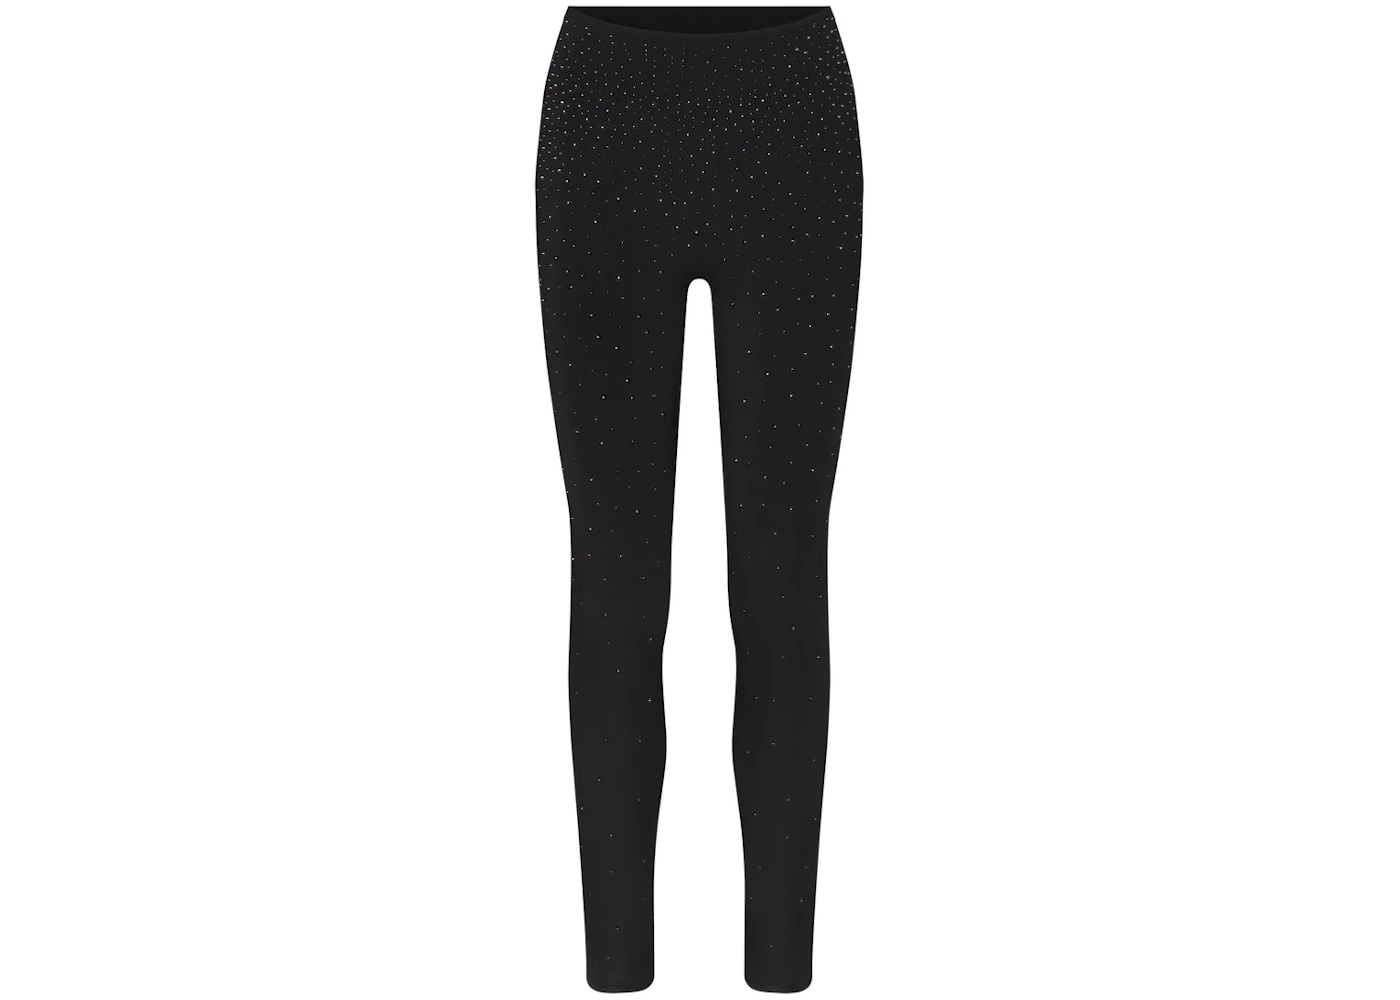 Medium luxform leggings in onyx black from set - Depop